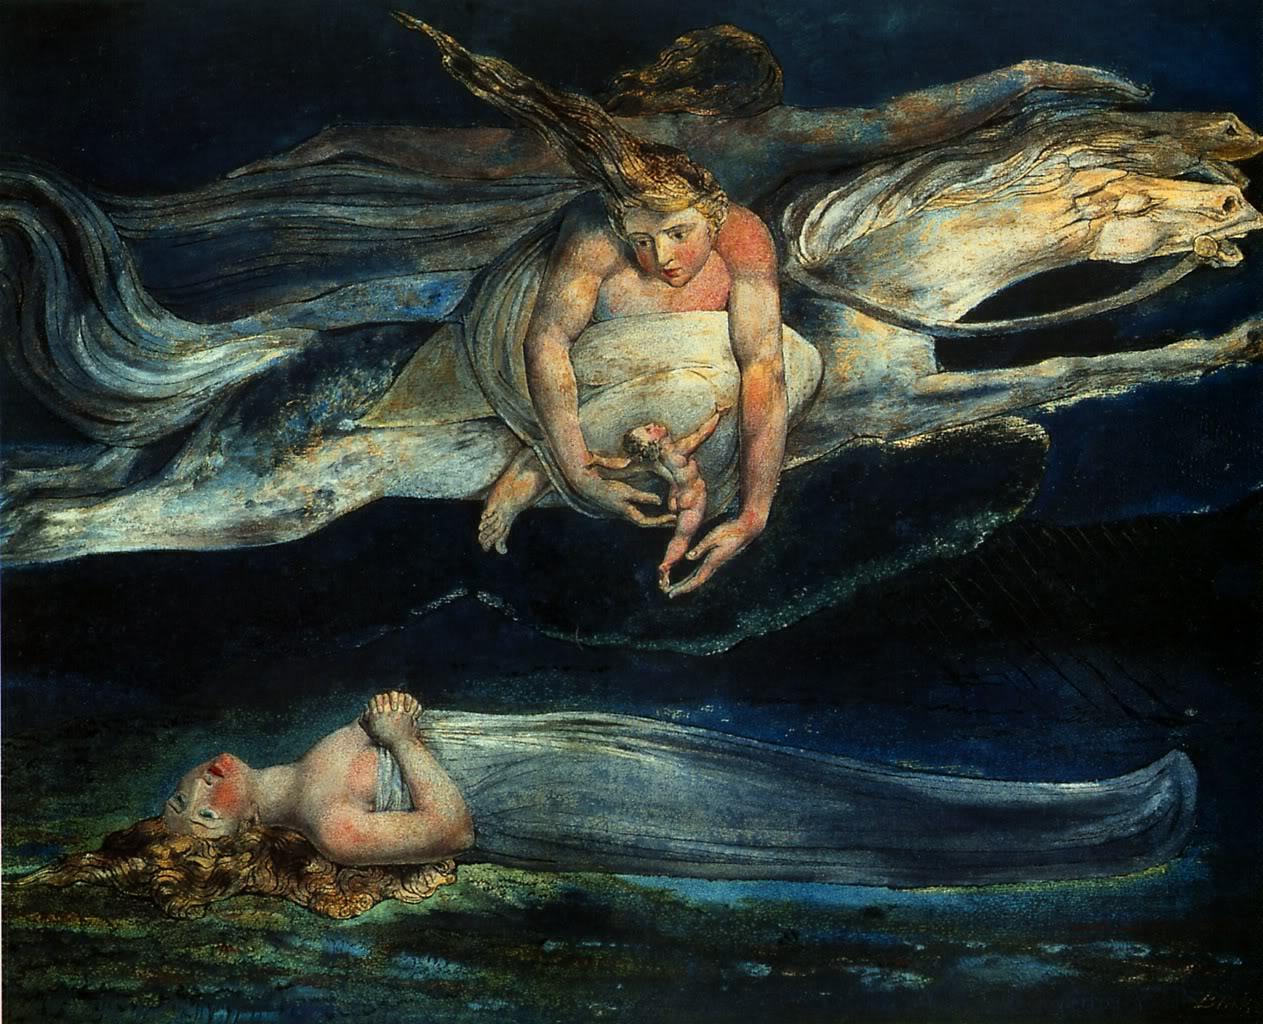 Pity de William Blake basado en Macbeth (1795)